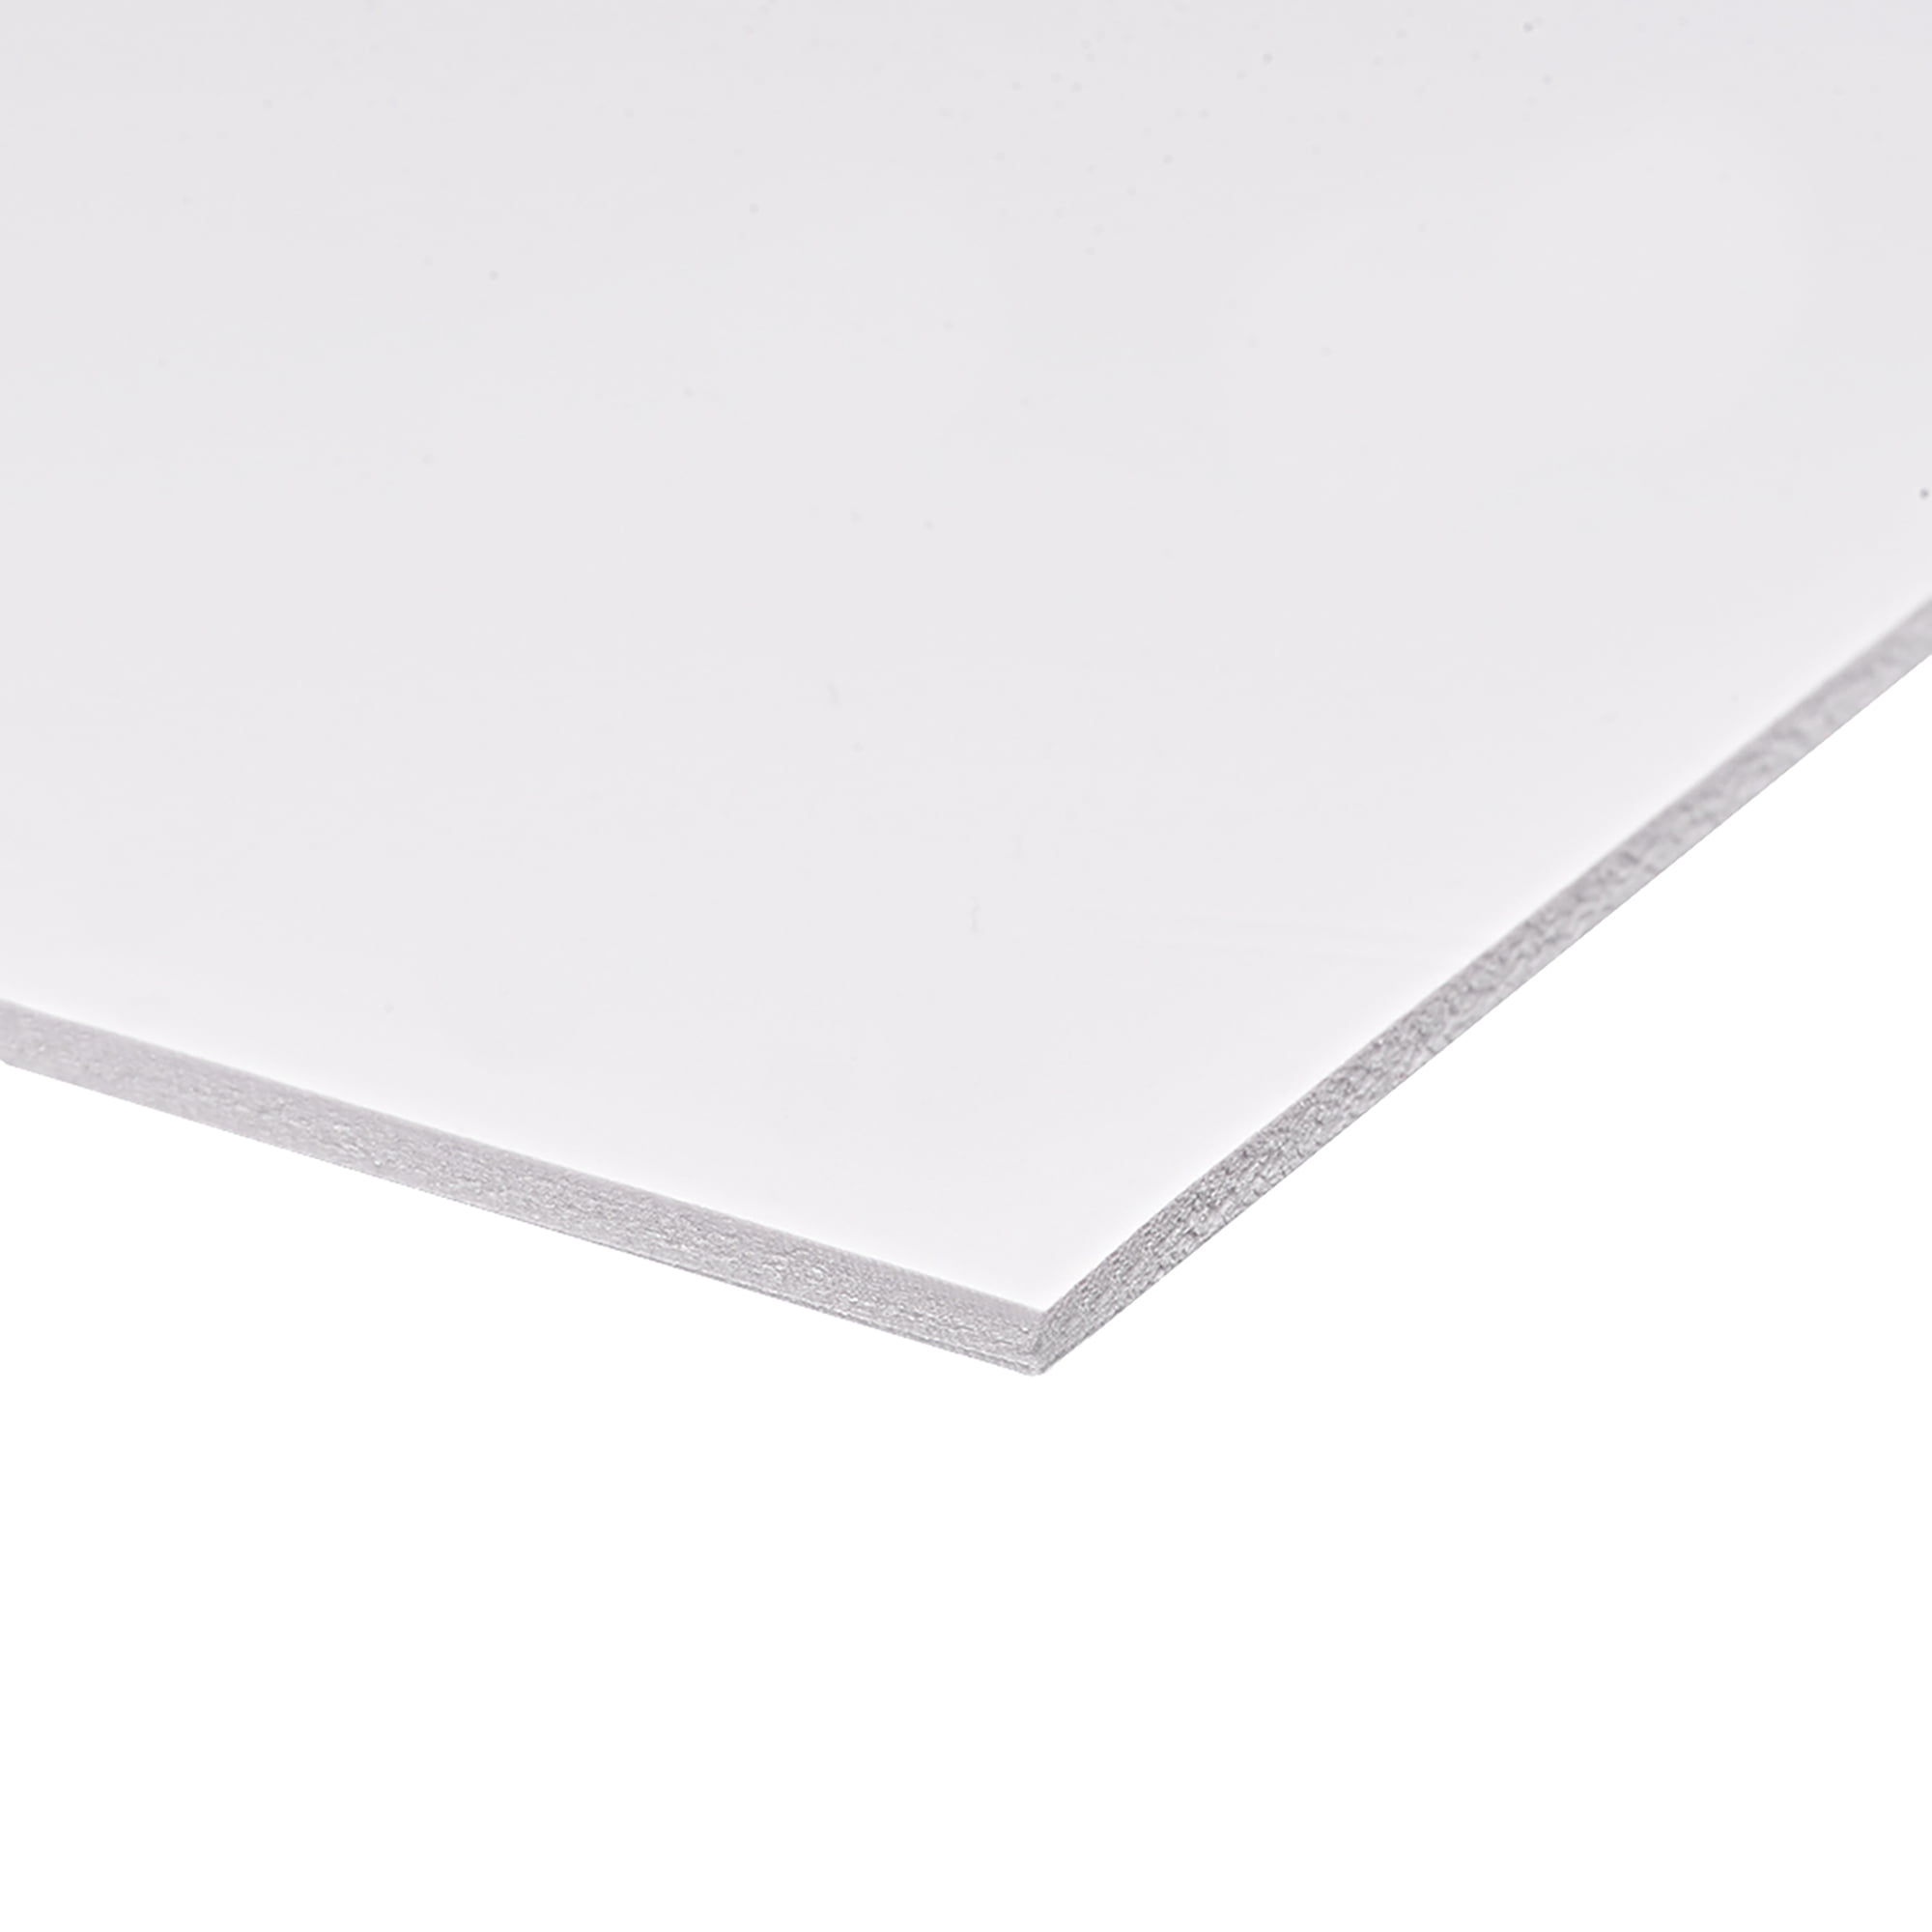 PVC Foam Board Sheet,3mmT x 8"W x12“L,Black,Double Sided,Expanded PVC Sheet 